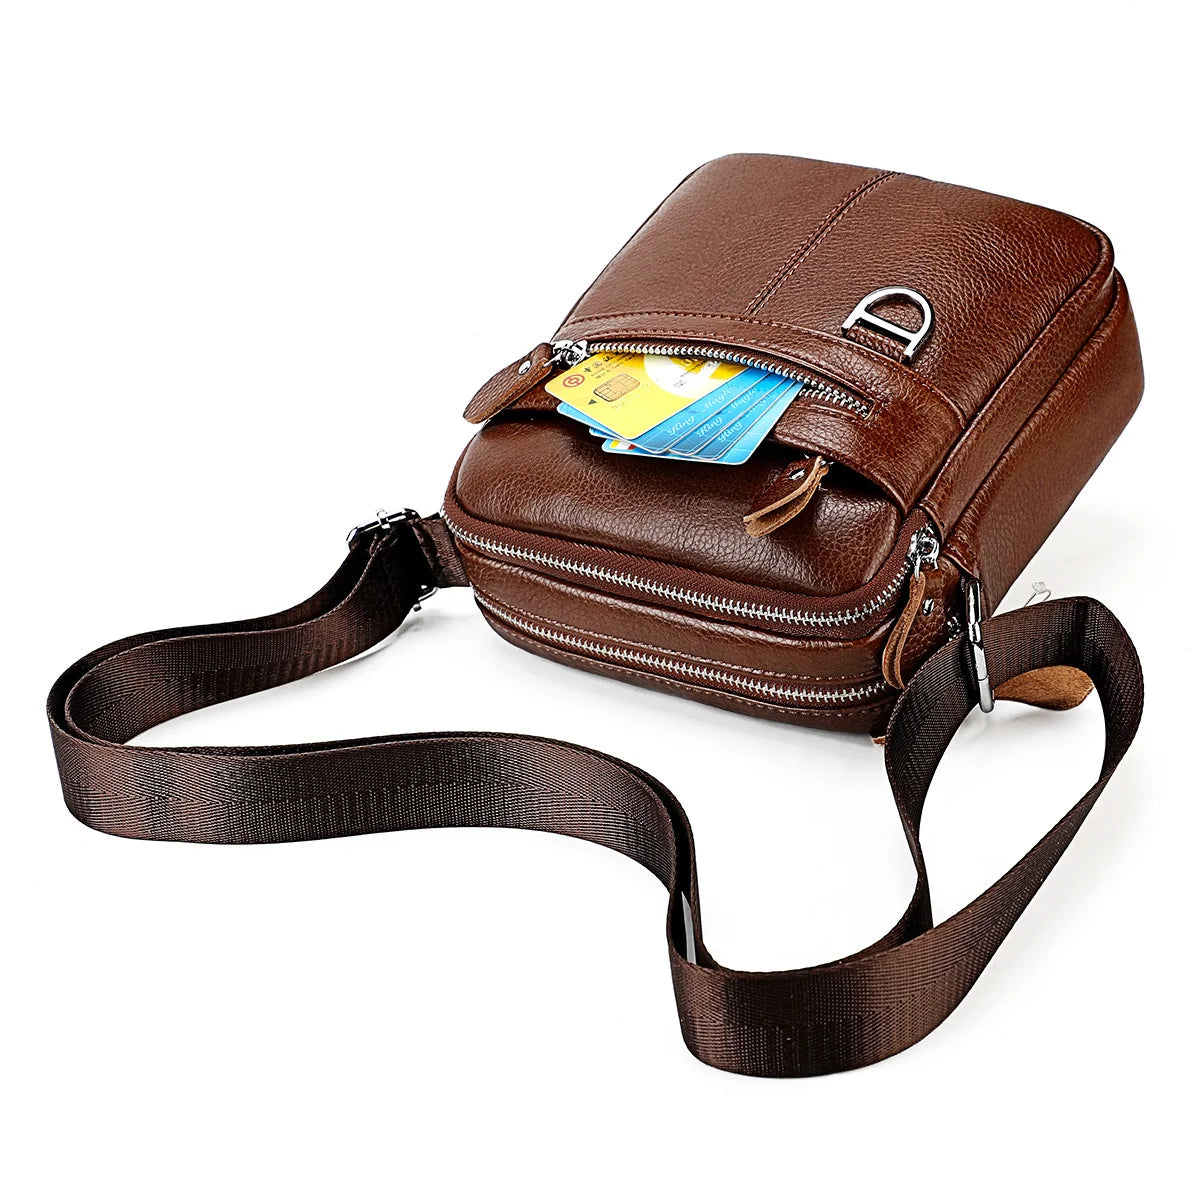 Men's Square-Shaped Messenger Bag: Crossbody Leather Shoulder Bag for Outdoor Adventures